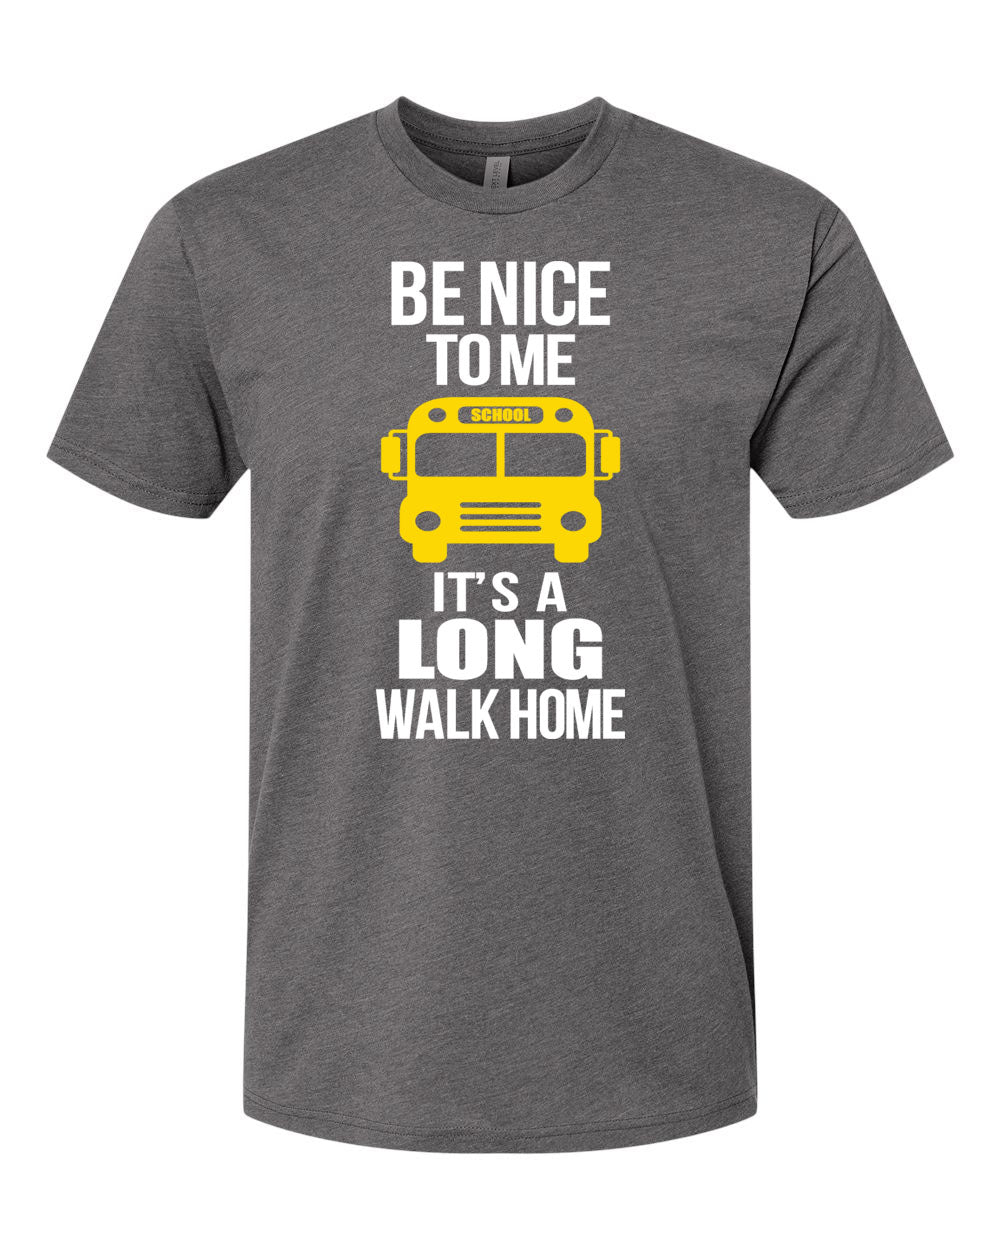 It's a long walk home T-shirt